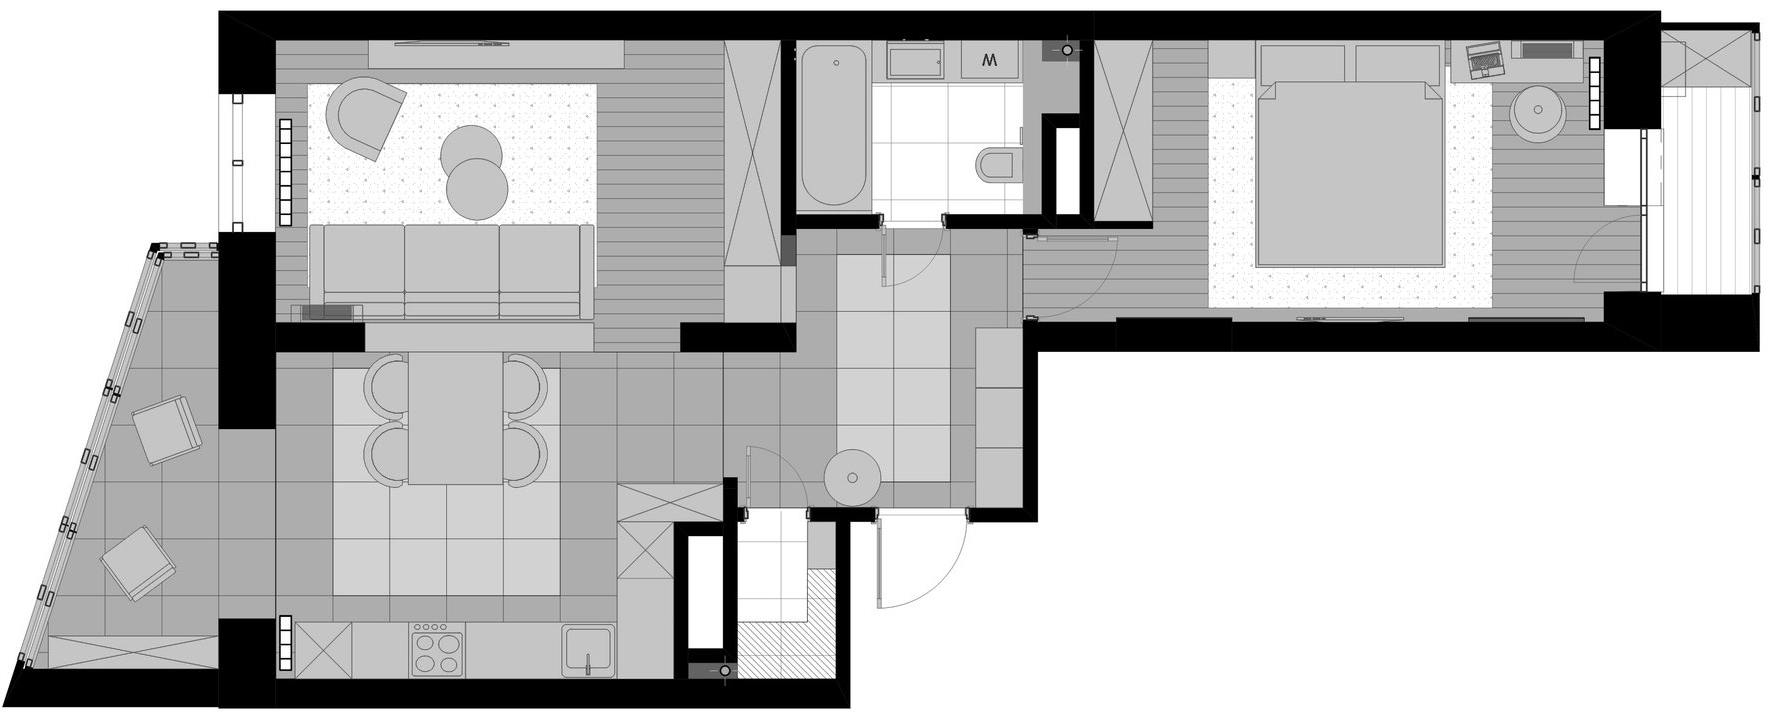 Egyedül élő orvos stílusos, kényelmes otthona - 74m2-es, kétszobás lakás